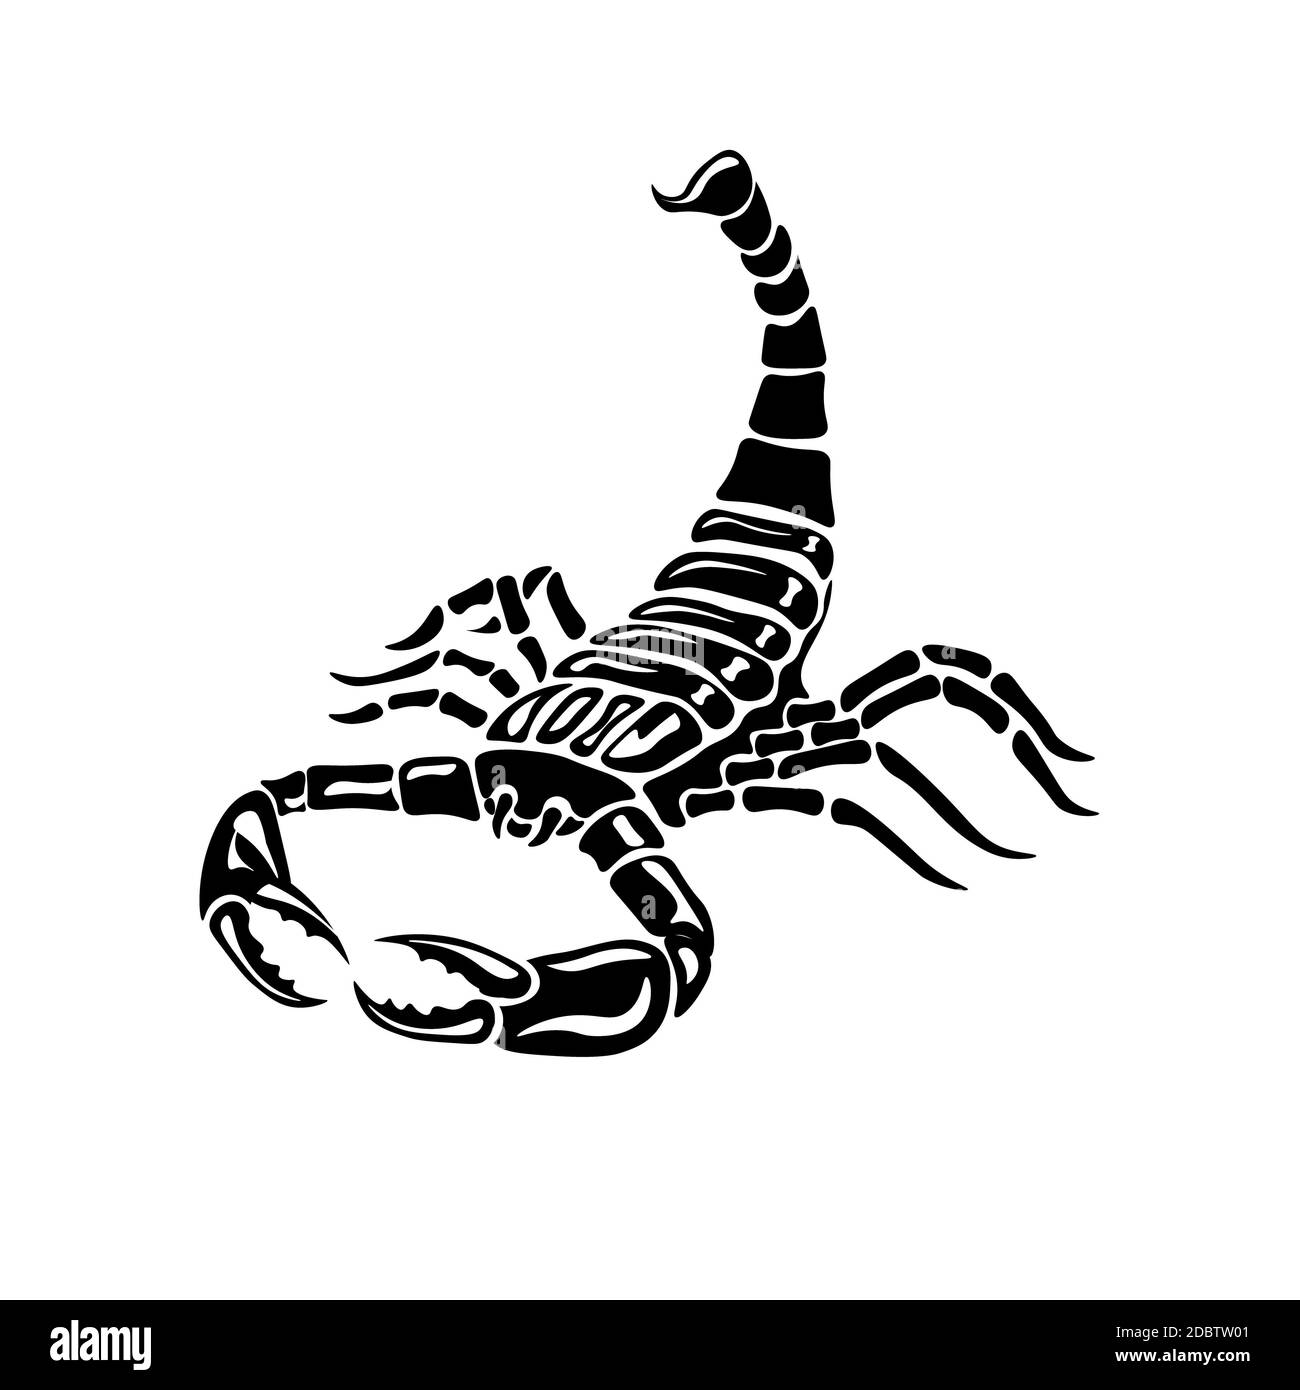 Scorpion noir et blanc agressif pour tatouages, signe zodiaque. Illustration vectorielle Banque D'Images